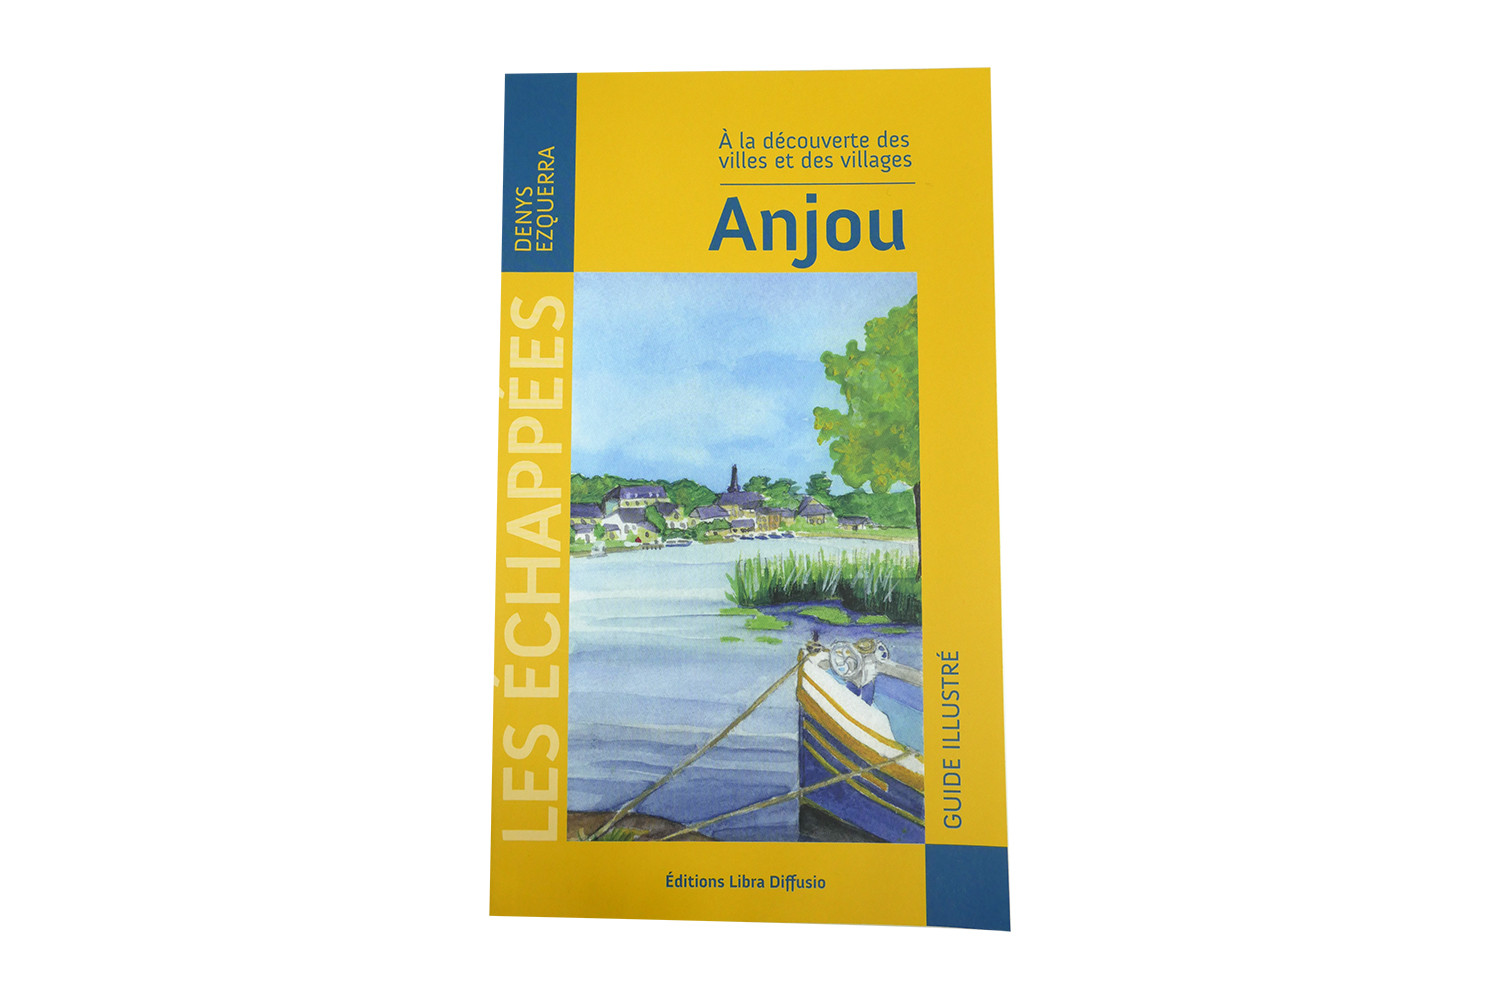 A la découverte des villes et villages de l'Anjou